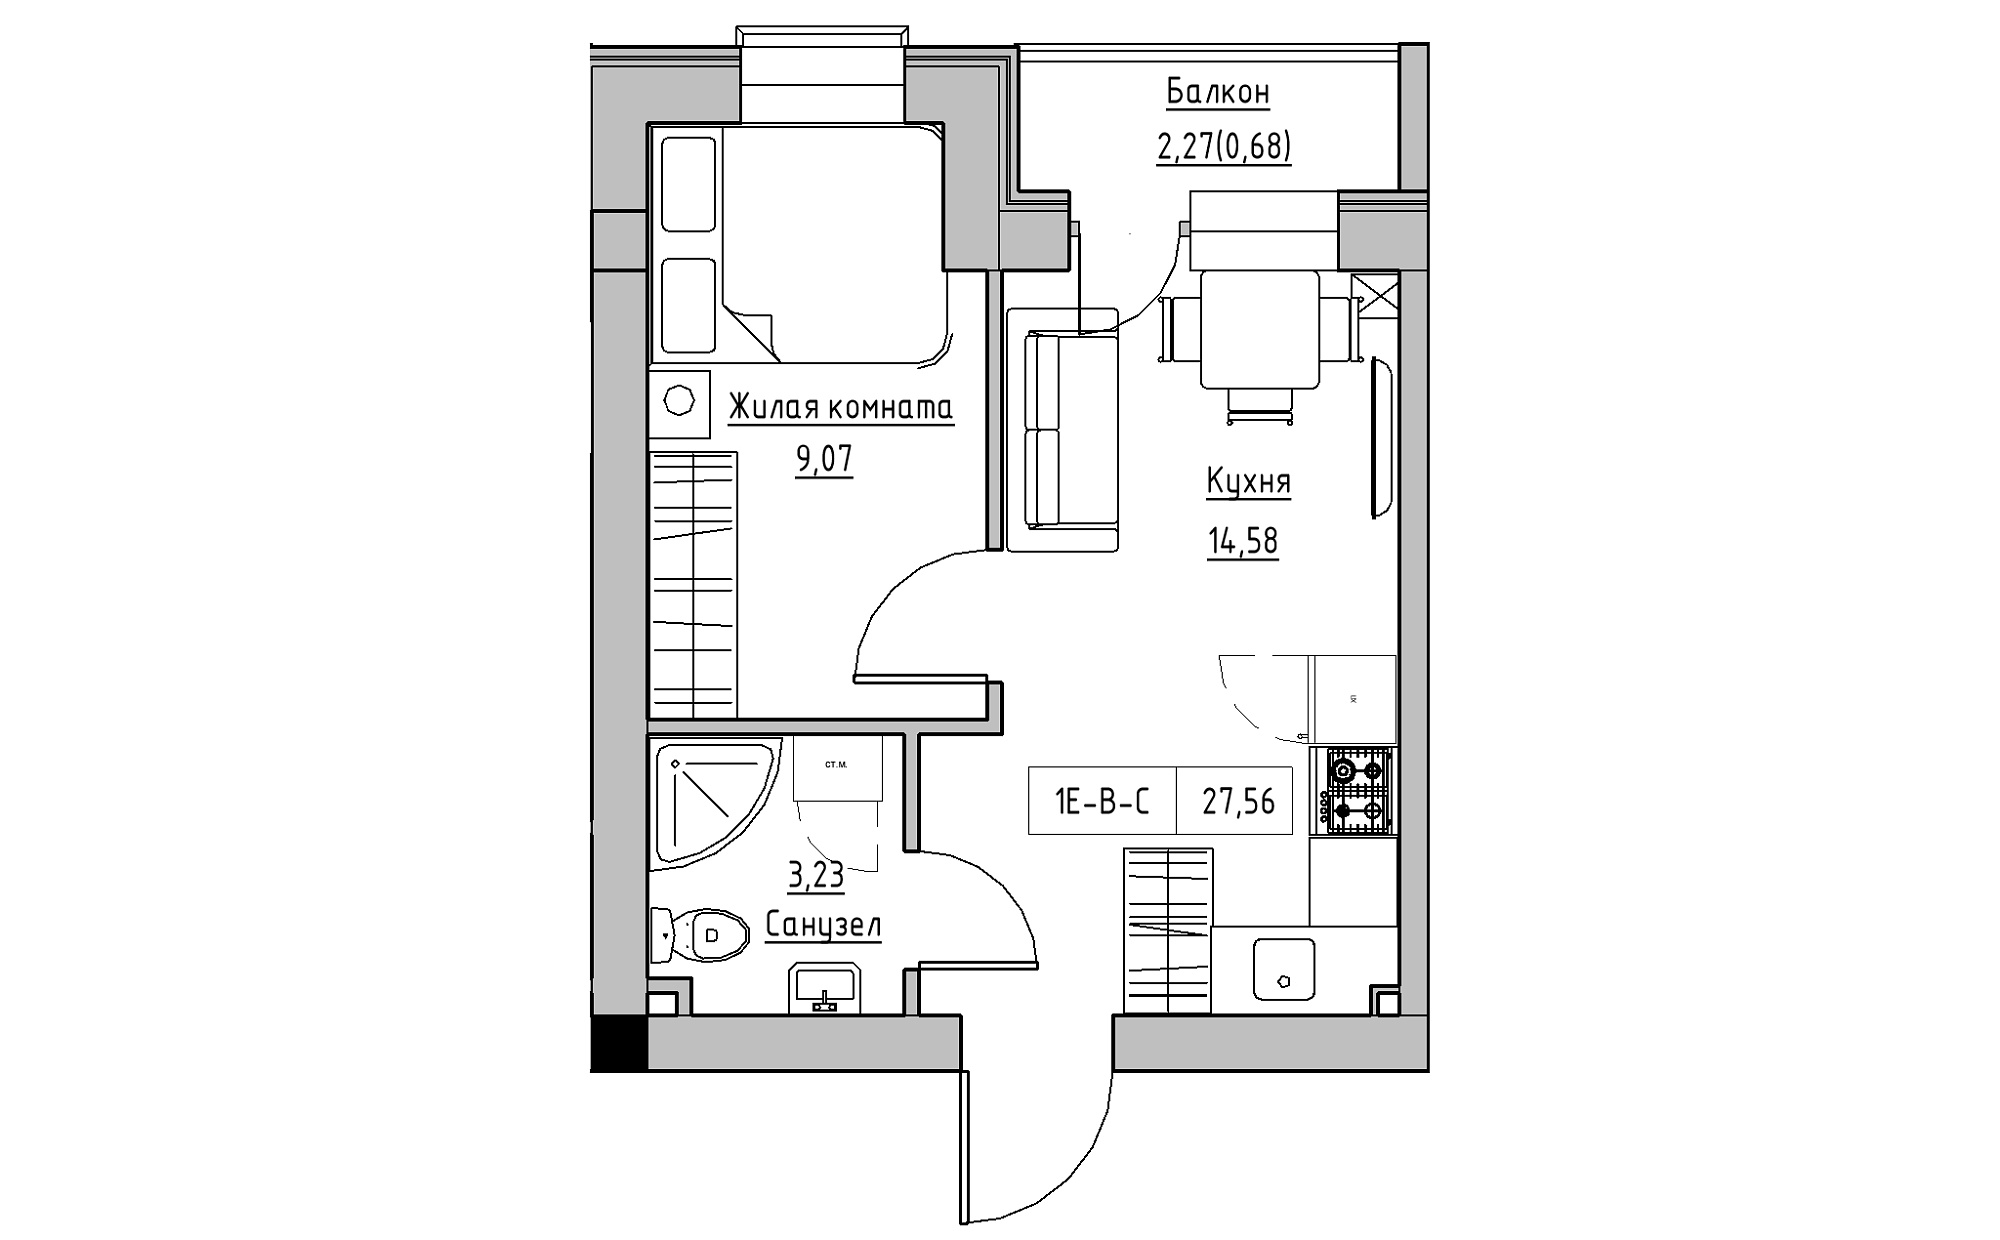 Планировка 1-к квартира площей 27.56м2, KS-022-05/0007.